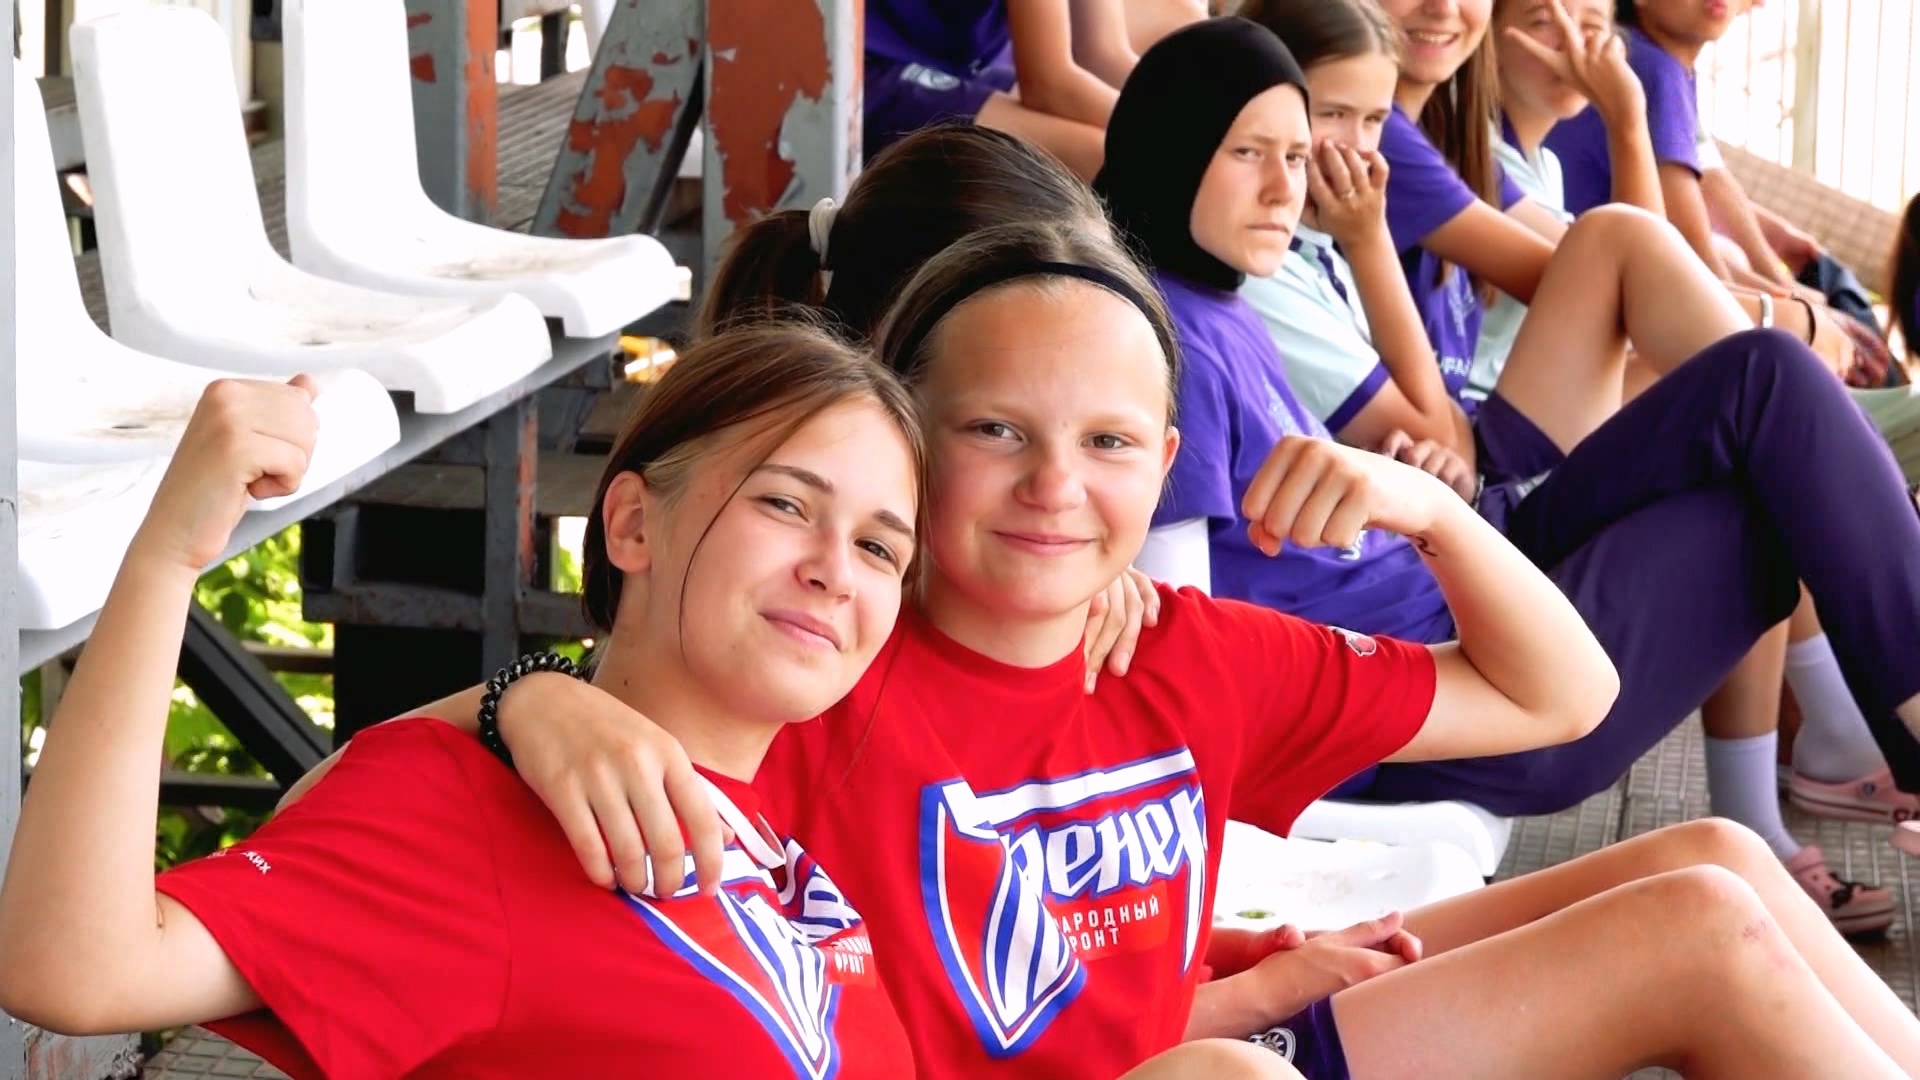 Девушки, влюбленные в футбол: как прошел юношеский турнир в Аше